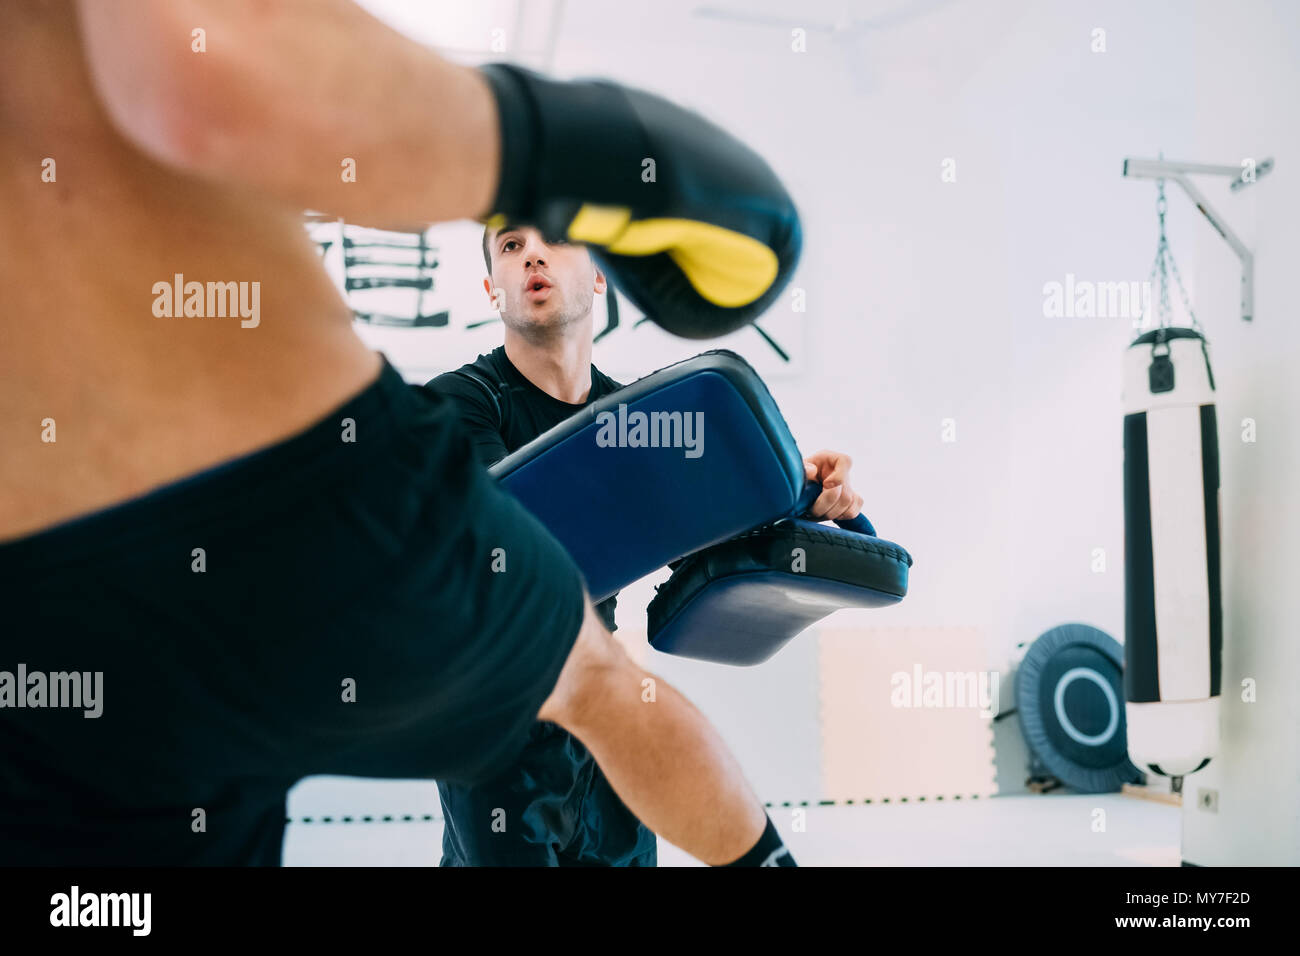 Man kickboxing training Stock Photo